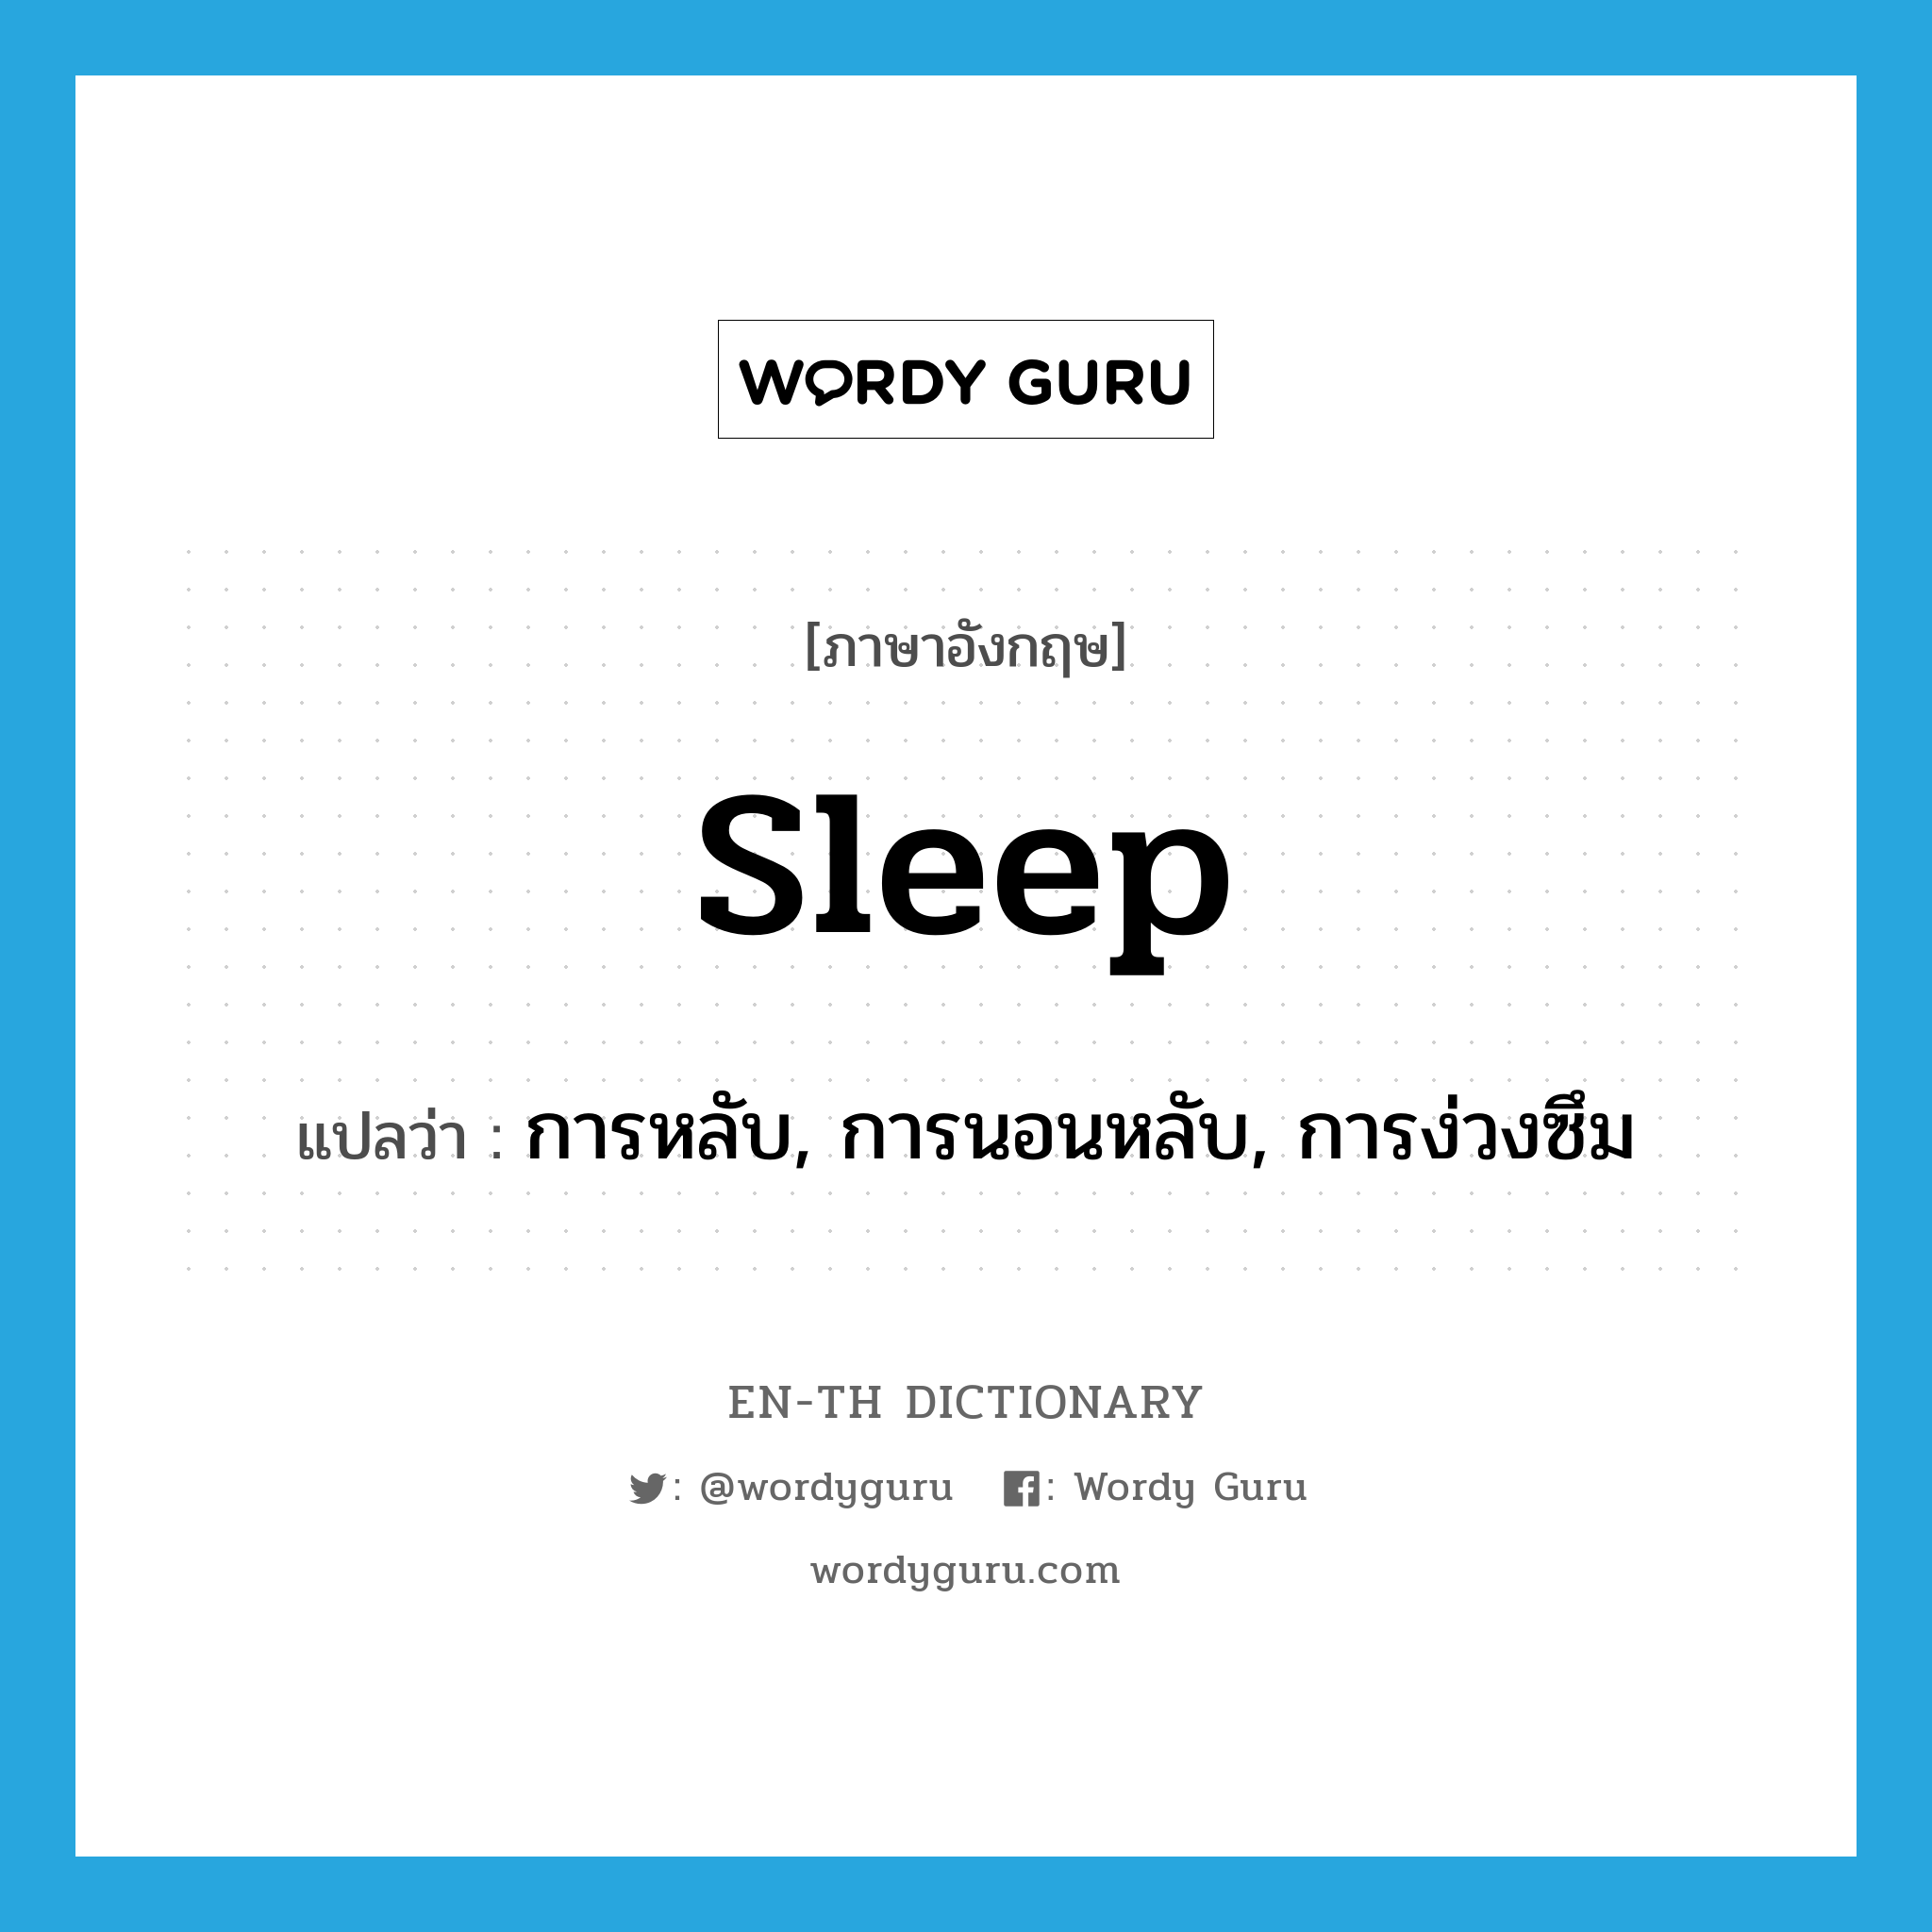 การหลับ, การนอนหลับ, การง่วงซึม ภาษาอังกฤษ?, คำศัพท์ภาษาอังกฤษ การหลับ, การนอนหลับ, การง่วงซึม แปลว่า sleep ประเภท N หมวด N